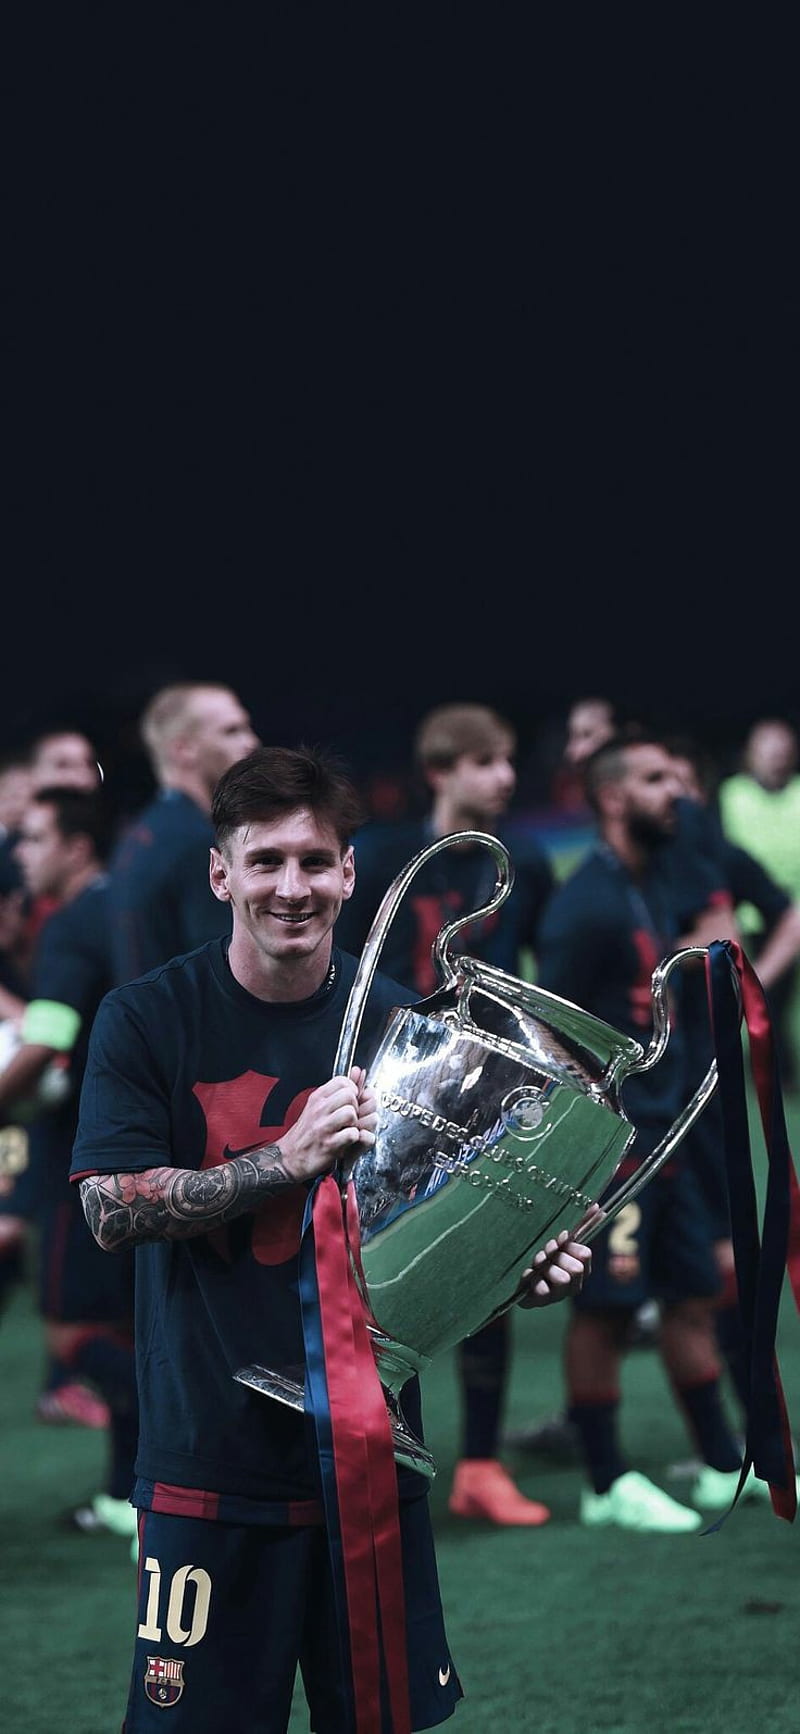 Messi đã để lại dấu ấn sâu đậm tại Barcelona và Champions League. Những khoảnh khắc đáng nhớ của anh ta trên sân cỏ sẽ không bao giờ quên trong lòng người hâm mộ bóng đá. Hãy cùng xem lại những trận đấu kinh điển mà Messi đã tham gia trong Champions League và những trận đấu đỉnh cao tại Barcelona.